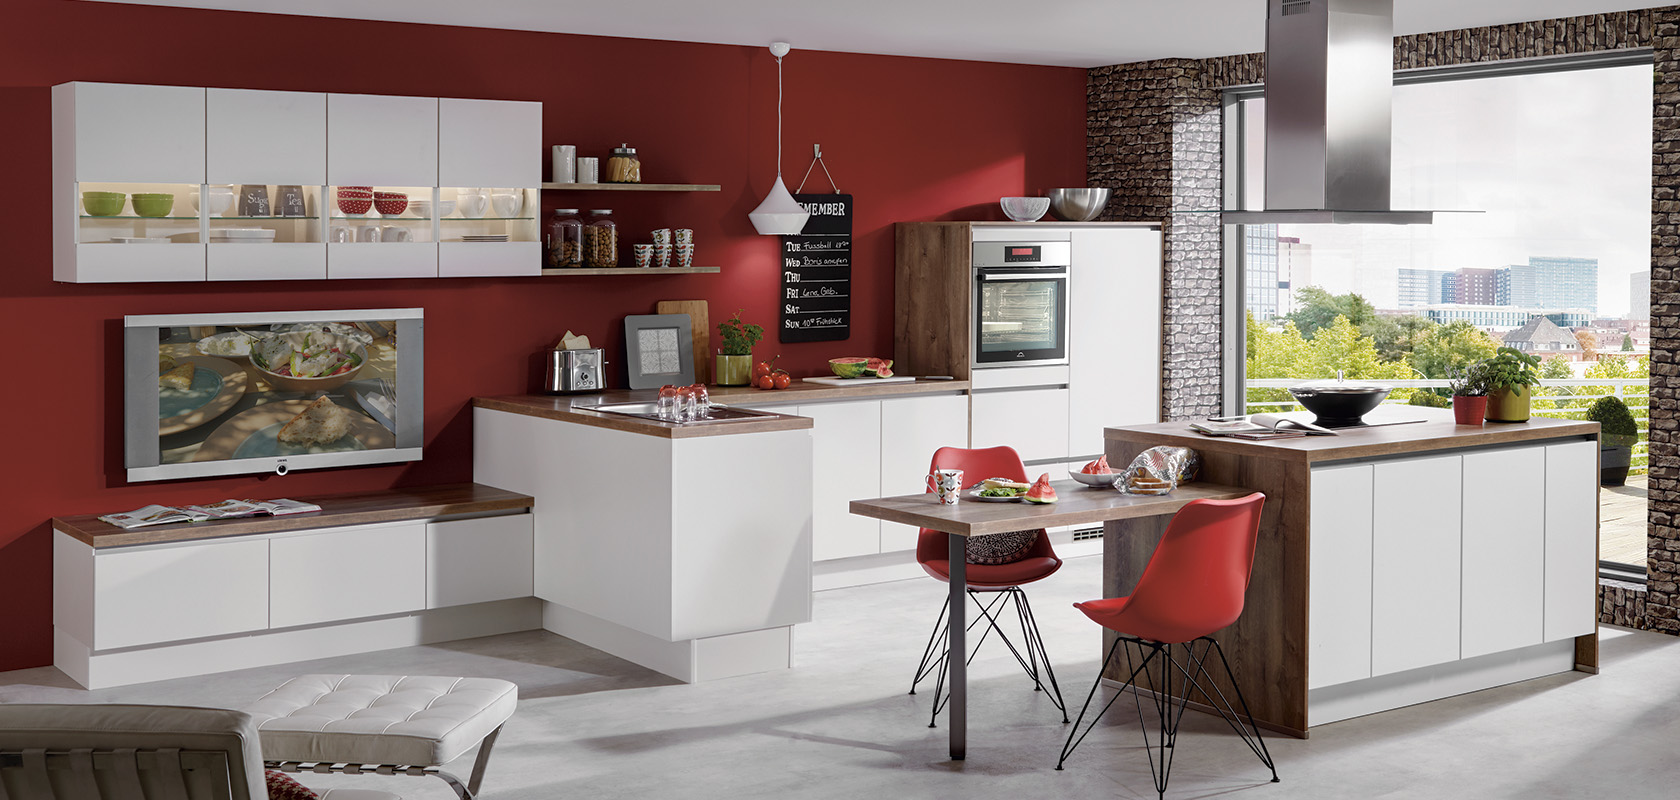 Moderne Kücheninnenräume mit weißen modularen Schränken, roten Akzentwänden, Ziegelmerkmalen, eleganten Geräten und einem gemütlichen Essbereich mit malerischem Fensterblick.